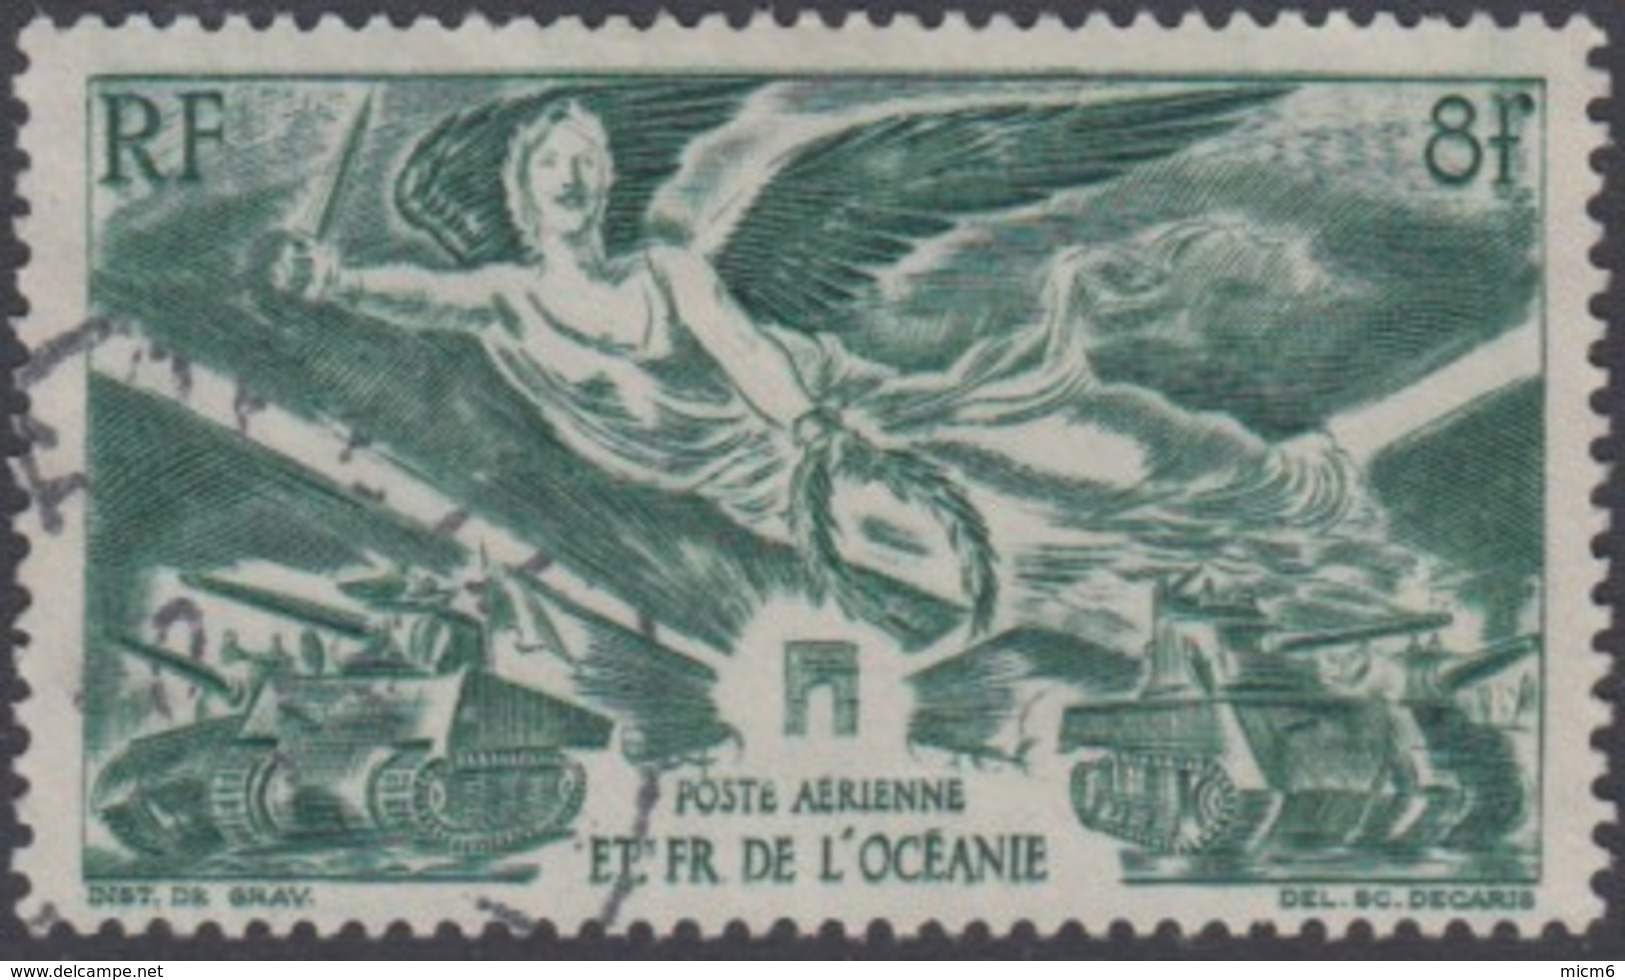 Océanie 1931-1956 - Poste Aérienne N° 19 (YT) N° 19 (AM) Oblitéré. - Airmail